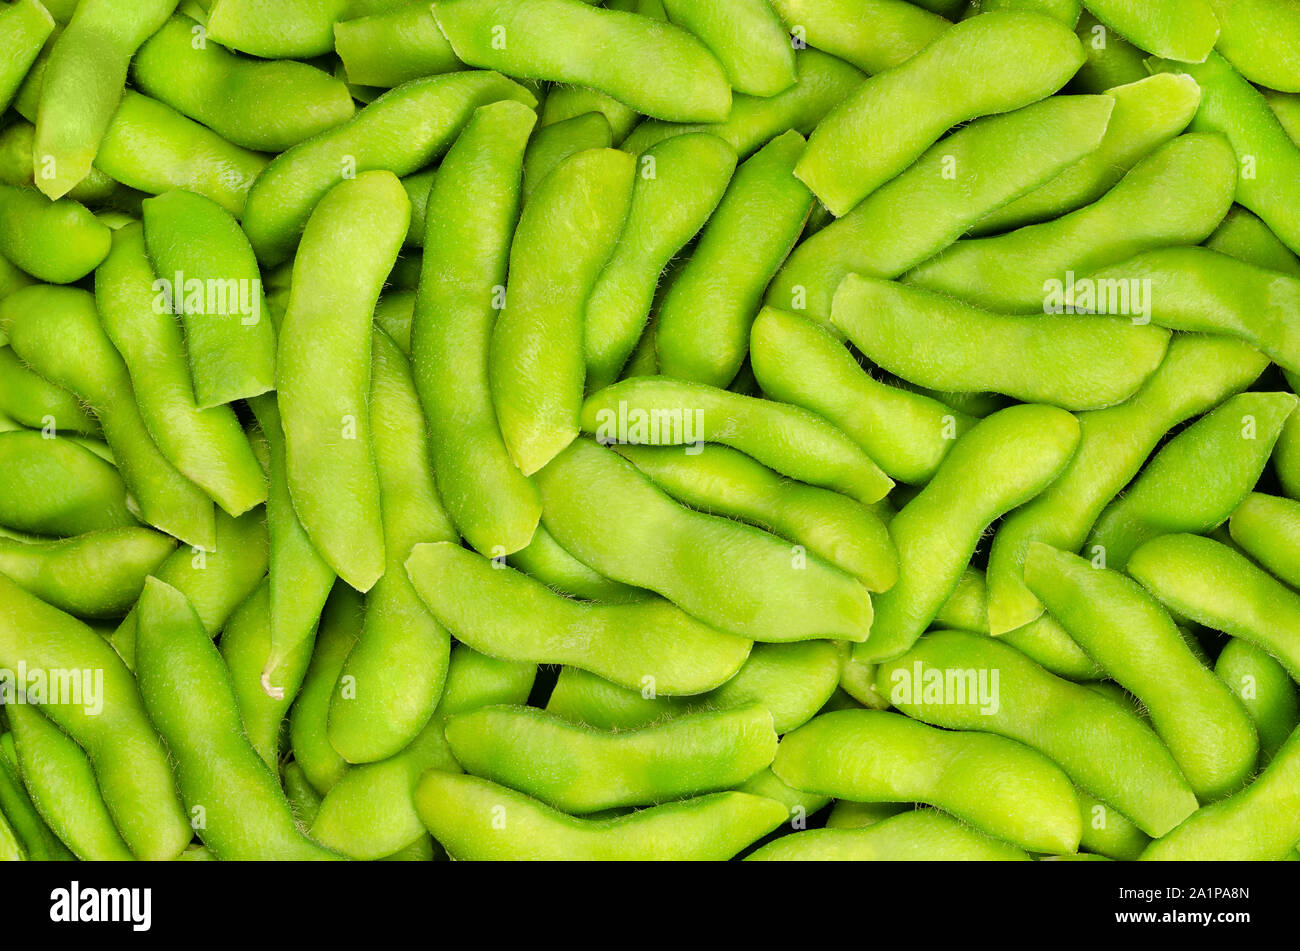 Edamame, soja vert dans le pod, arrière-plan. Les graines de soja immatures, aussi Maodou. Glycine max, une légumineuse, comestibles après cuisson et une riche source de protéines. Banque D'Images